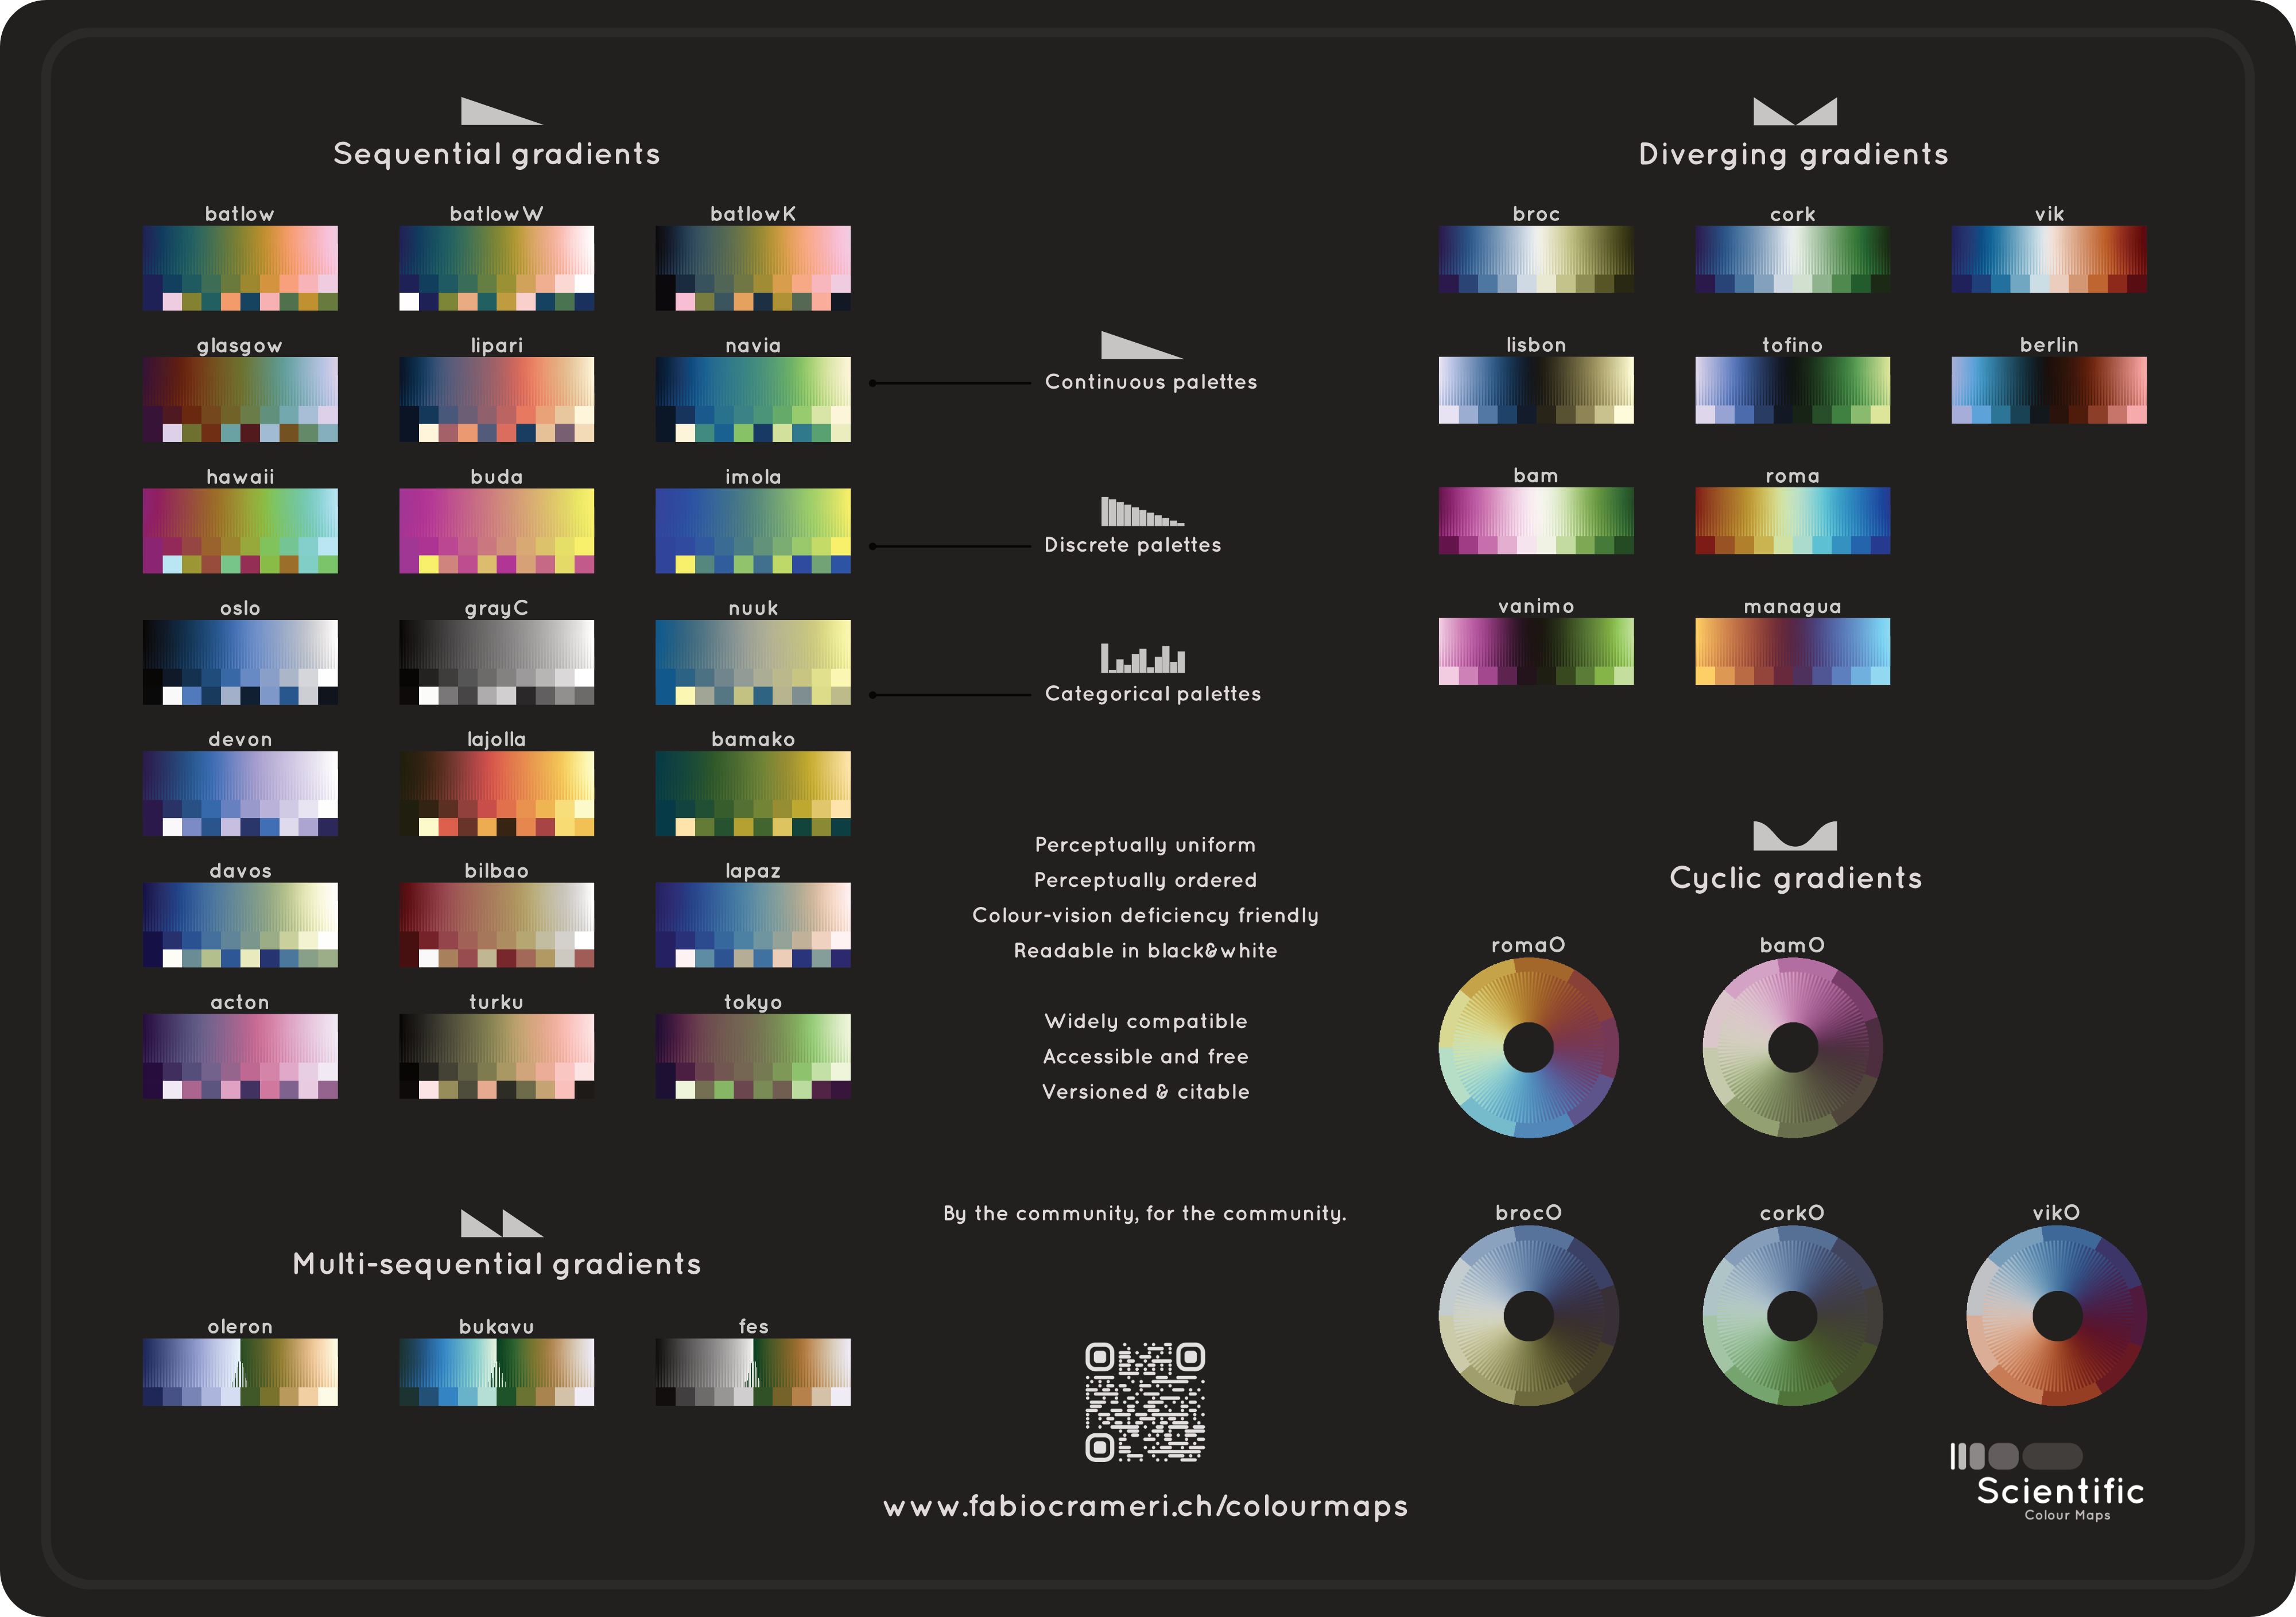 The Scientific colour maps